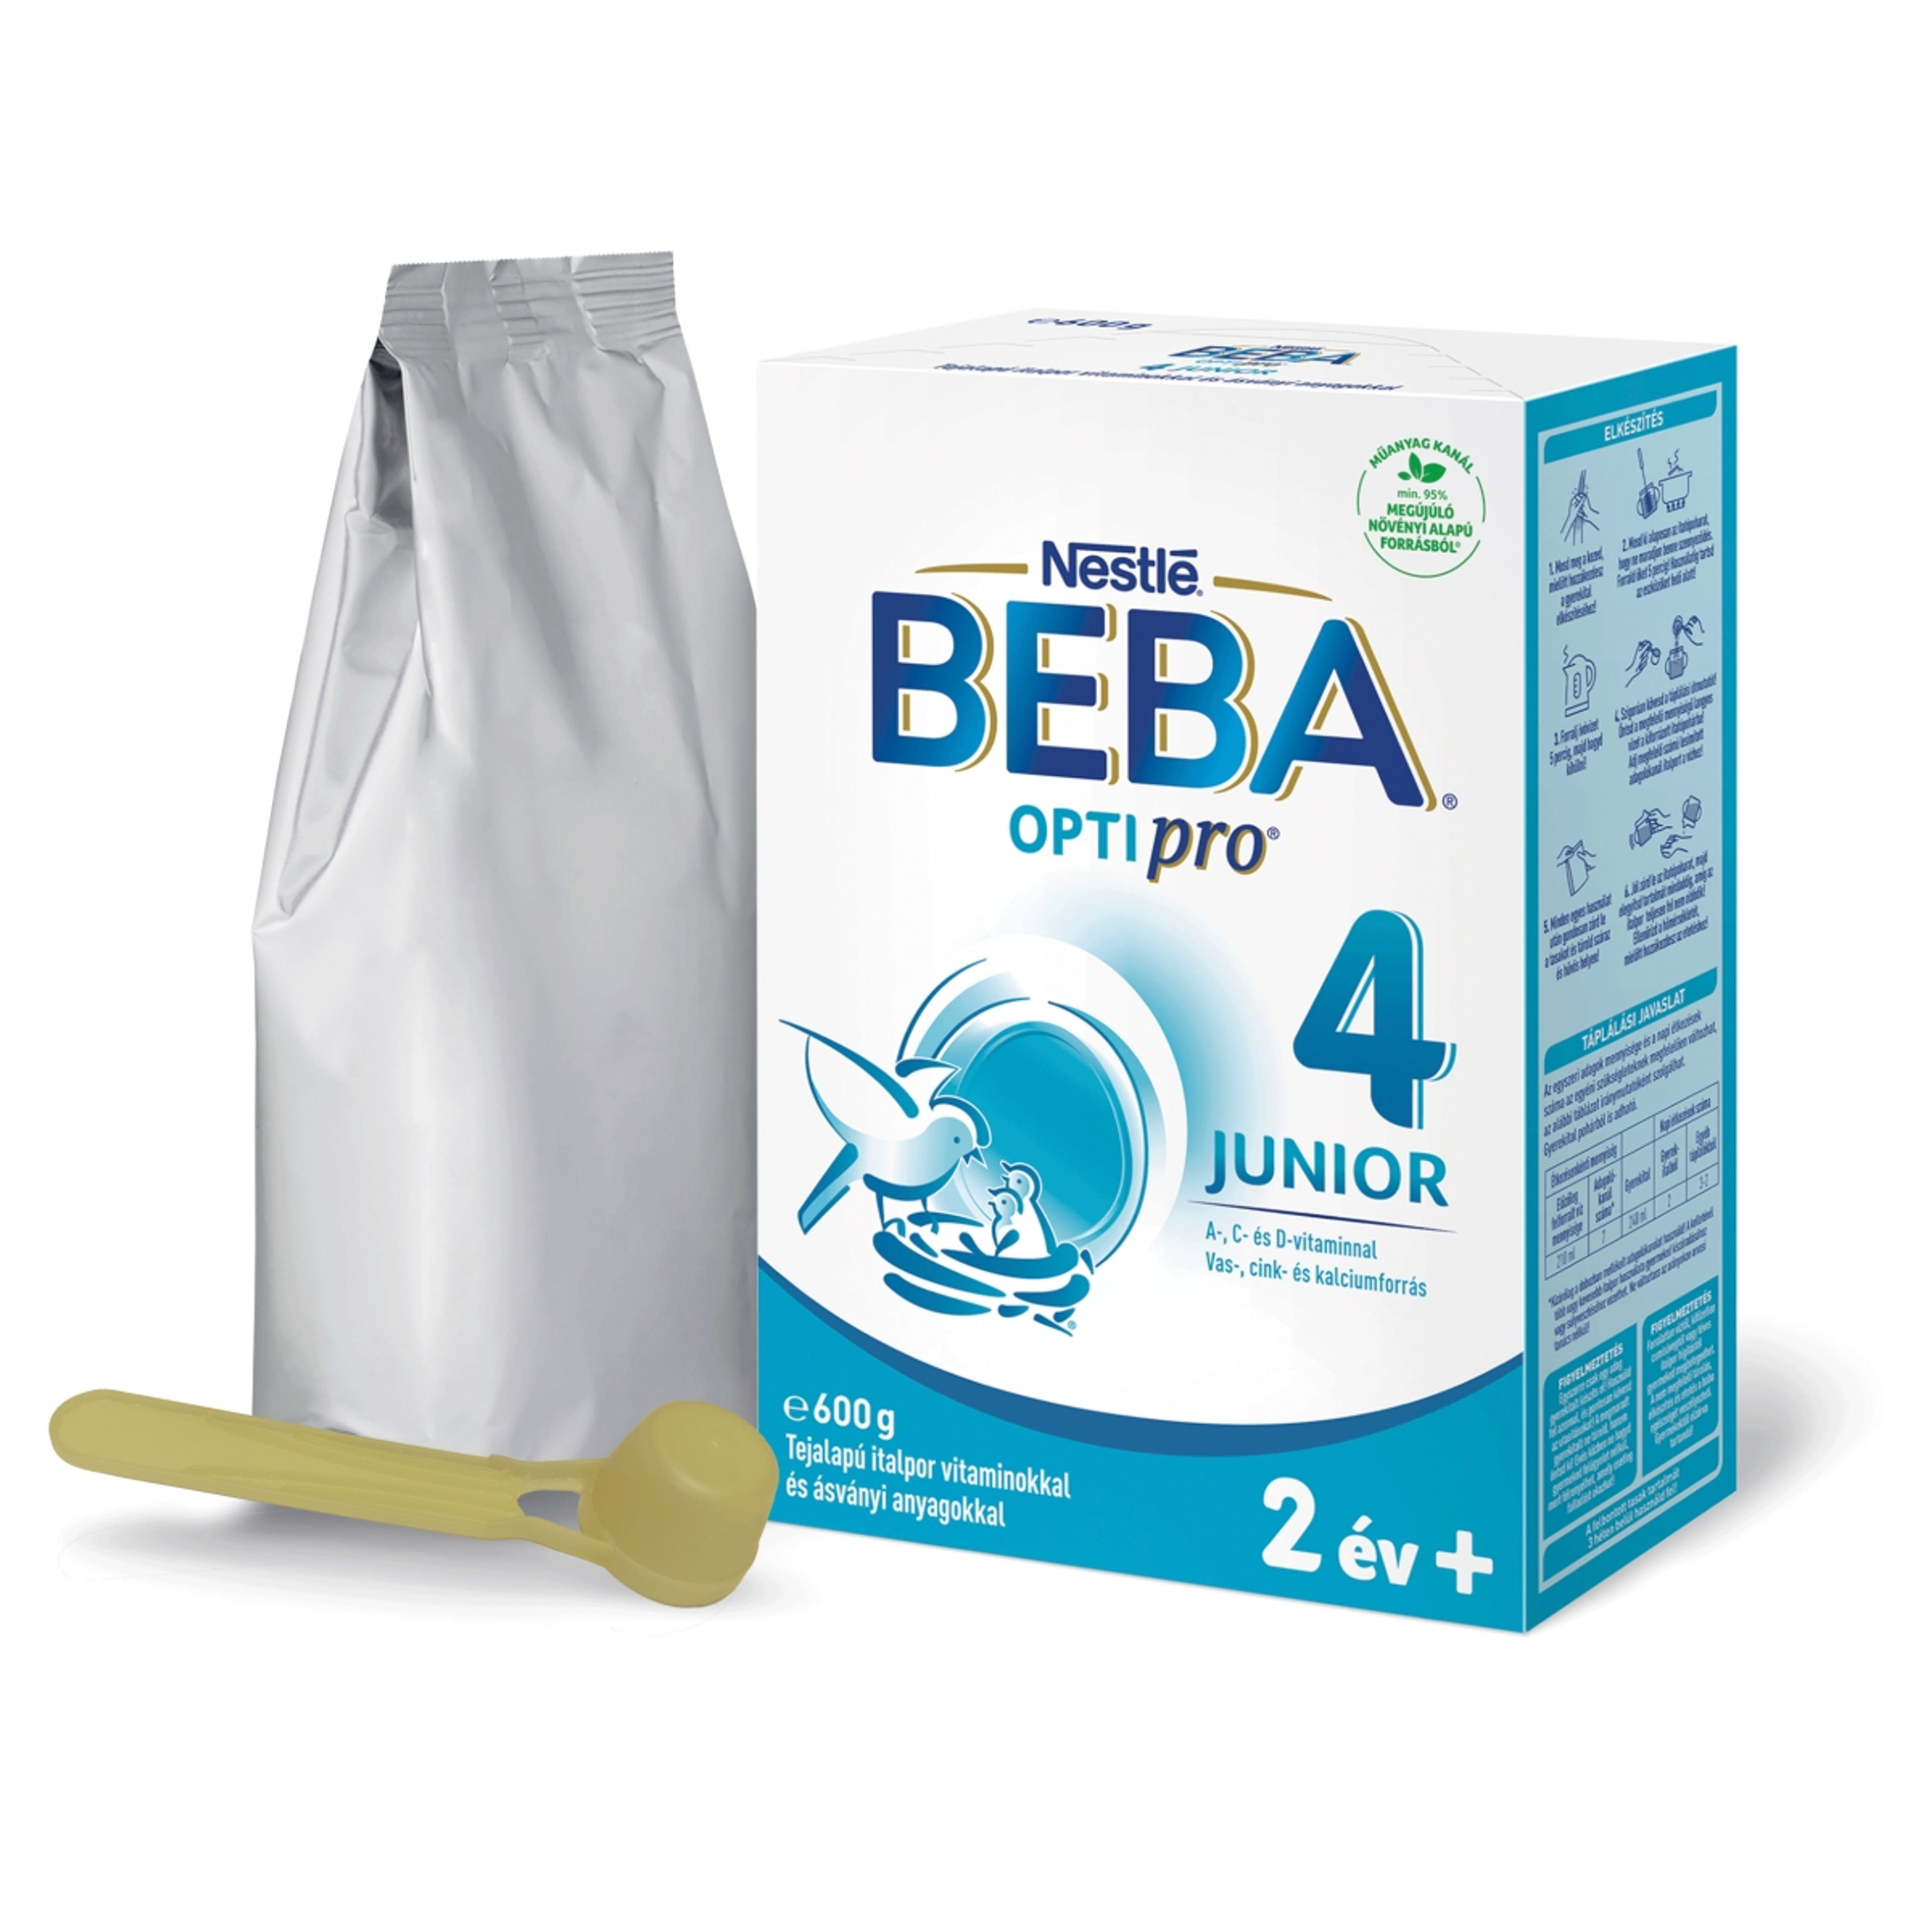 Beba Optipro 4 Junior tejalapú italpor vitaminokkal és ásványi anyagokkal 2 éves kortól - 600 g-2